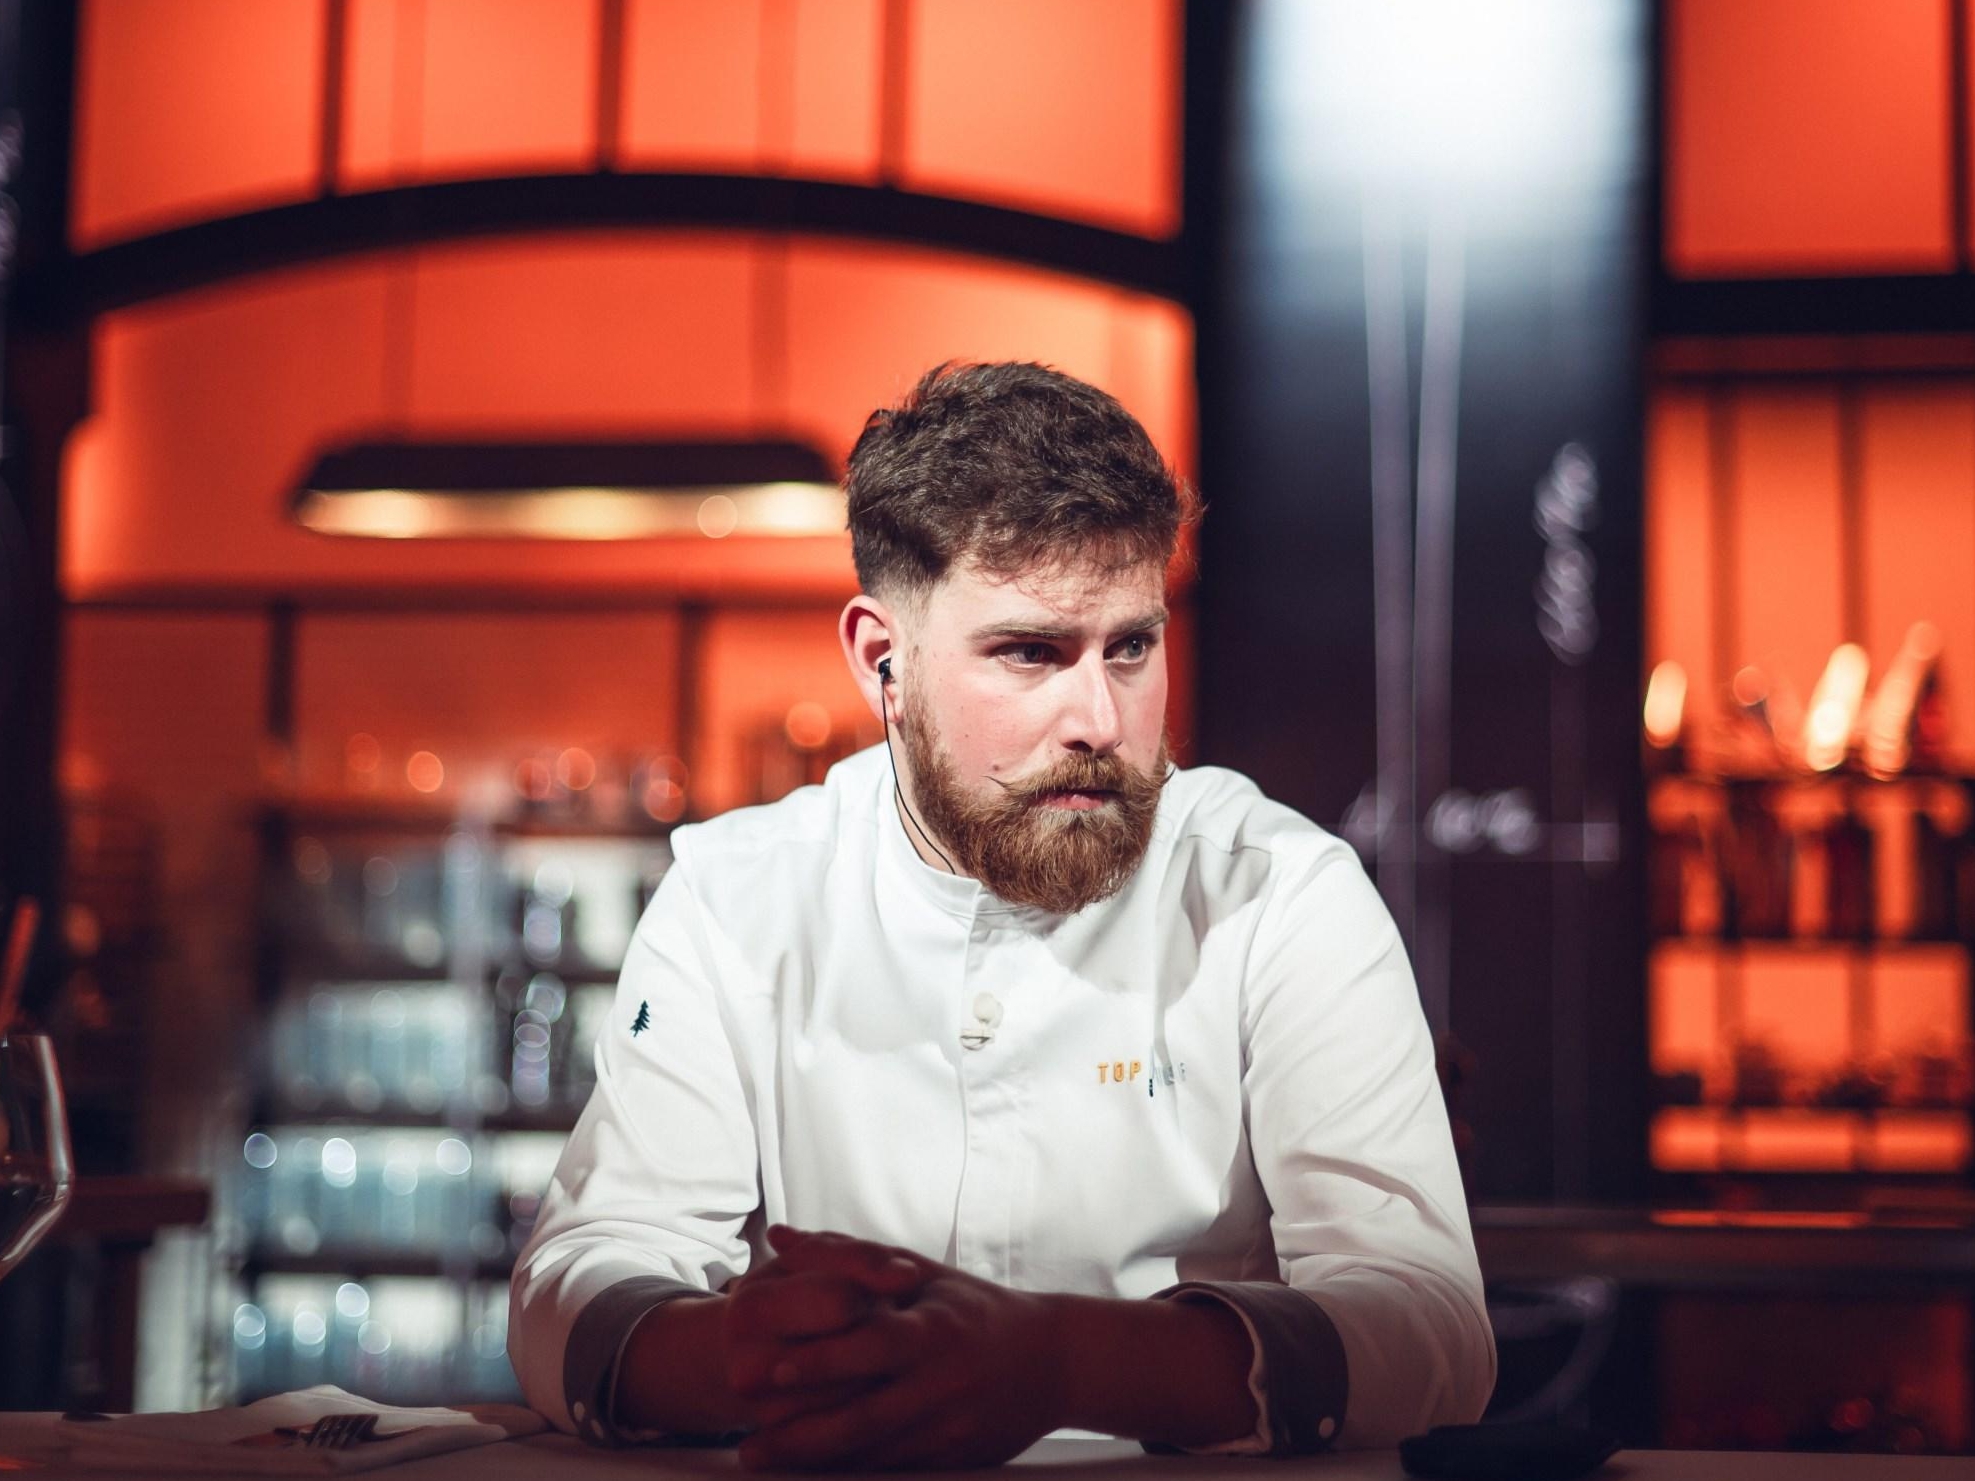 Pierre Reure, 28 ans, le candidat rustique de cette saison de «Top Chef», a été éliminé après sept semaines d'émission. Julien THEUIL/M6